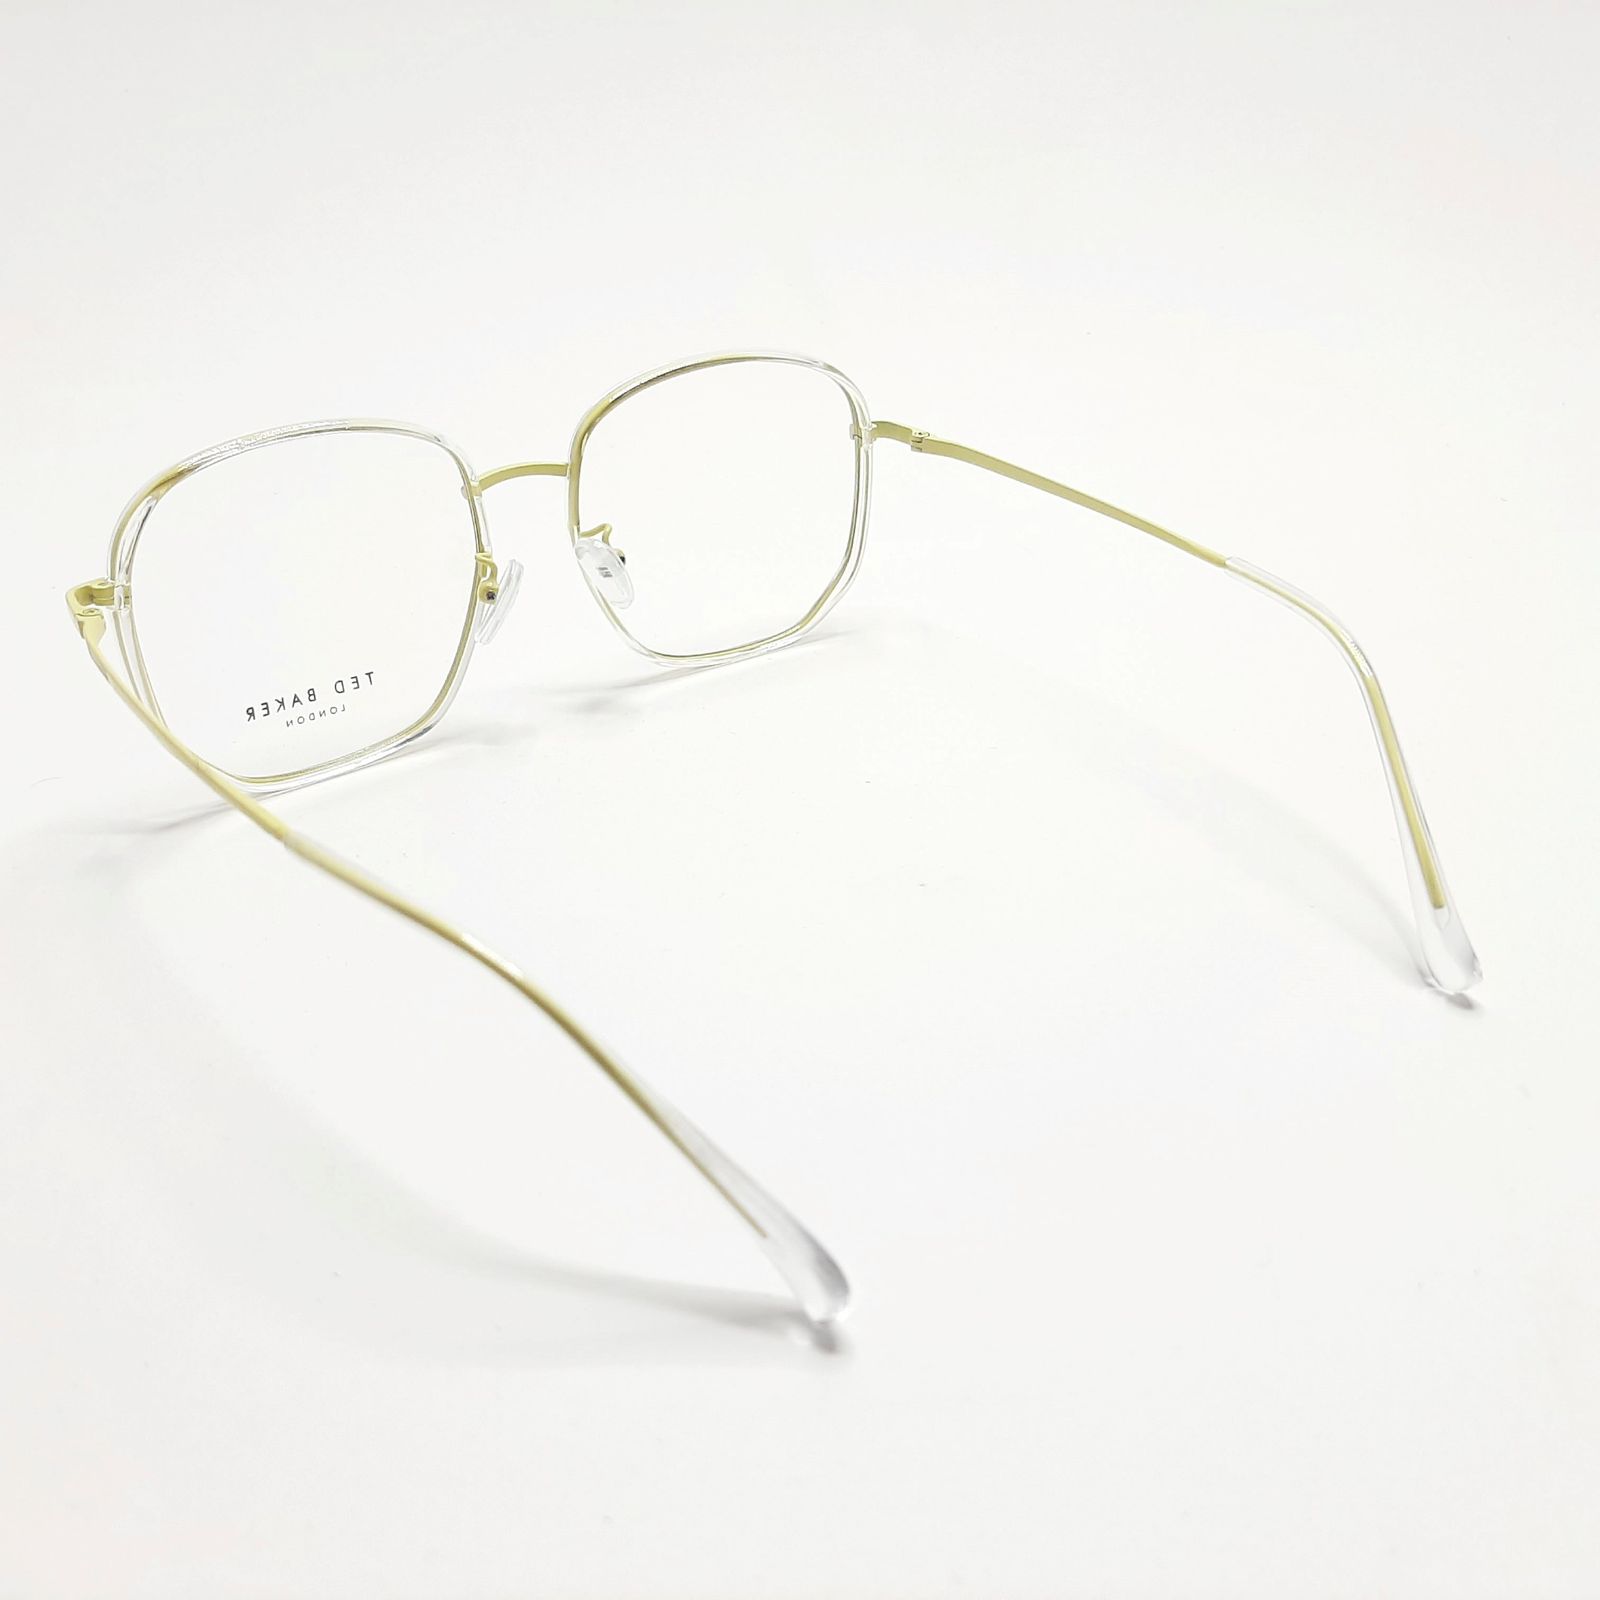 فریم عینک طبی تد بیکر مدل TB9181c85 -  - 6